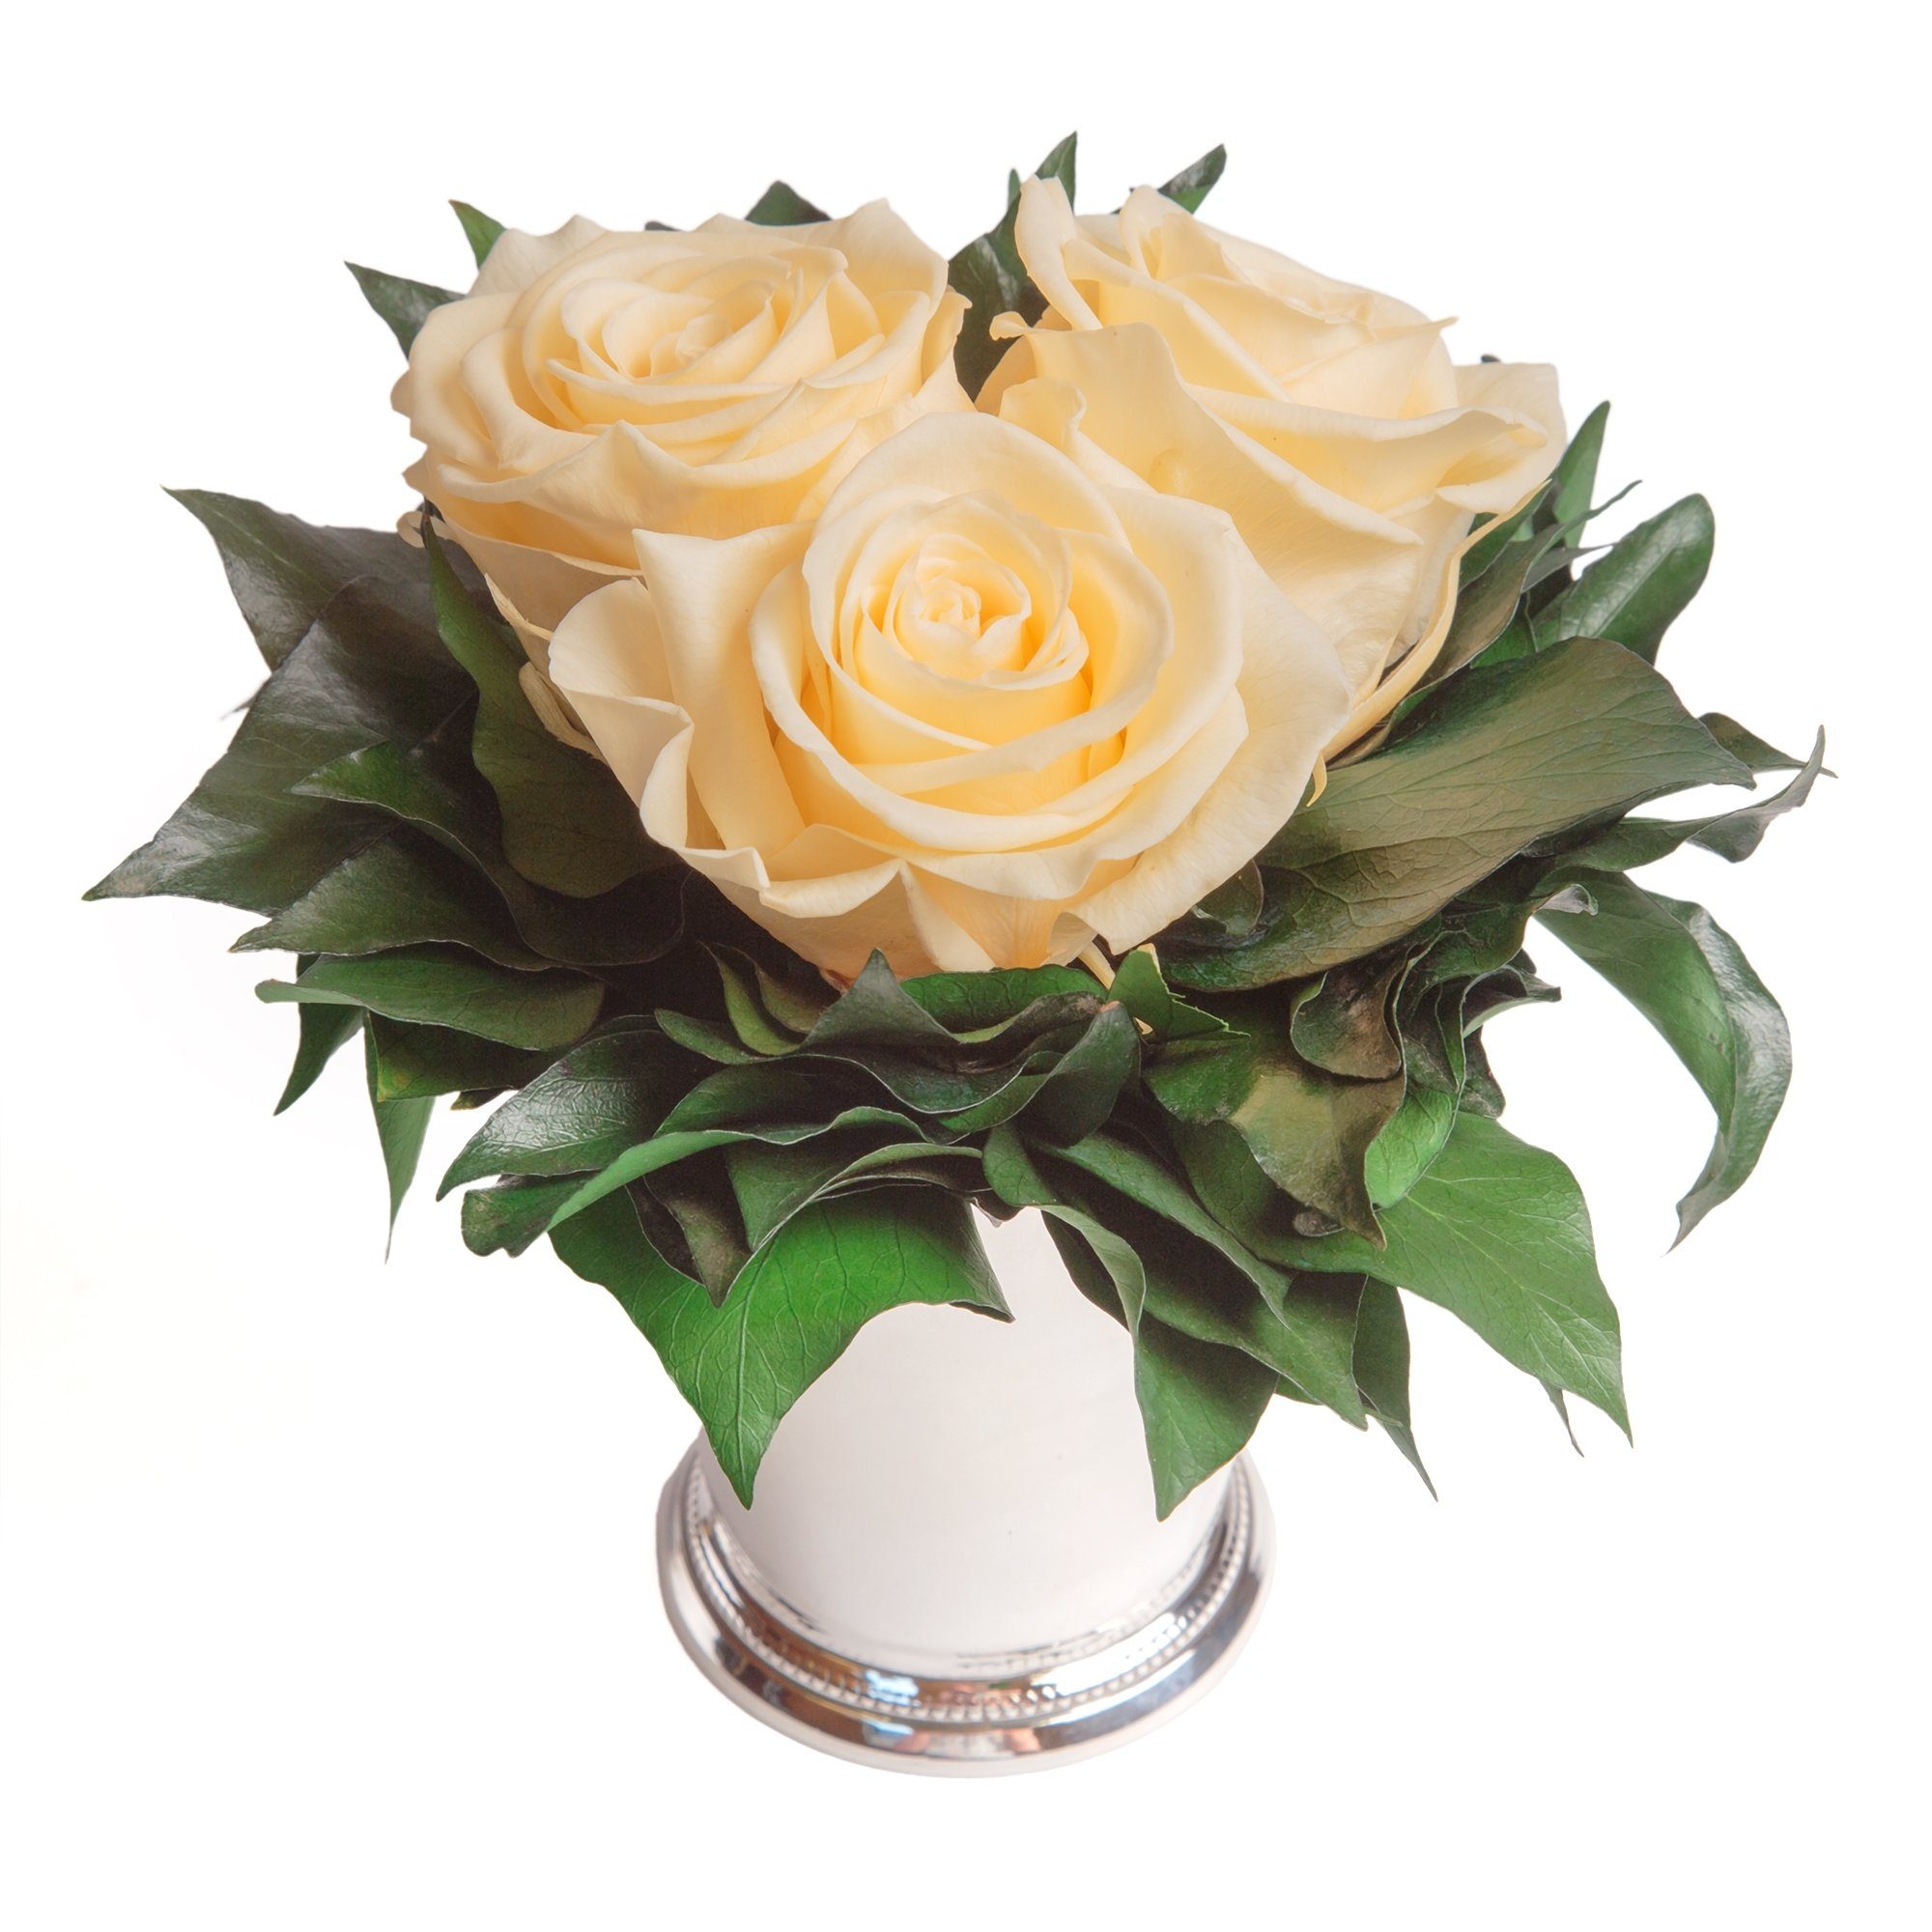 Deko Infinity Vase Rose 3 3 cm, ROSEMARIE haltbar Champagner Jahre Rose, SCHULZ Heidelberg, Blumenstrauß Wohnzimmer Höhe bis 15 silberfarbene zu Kunstorchidee Rosen